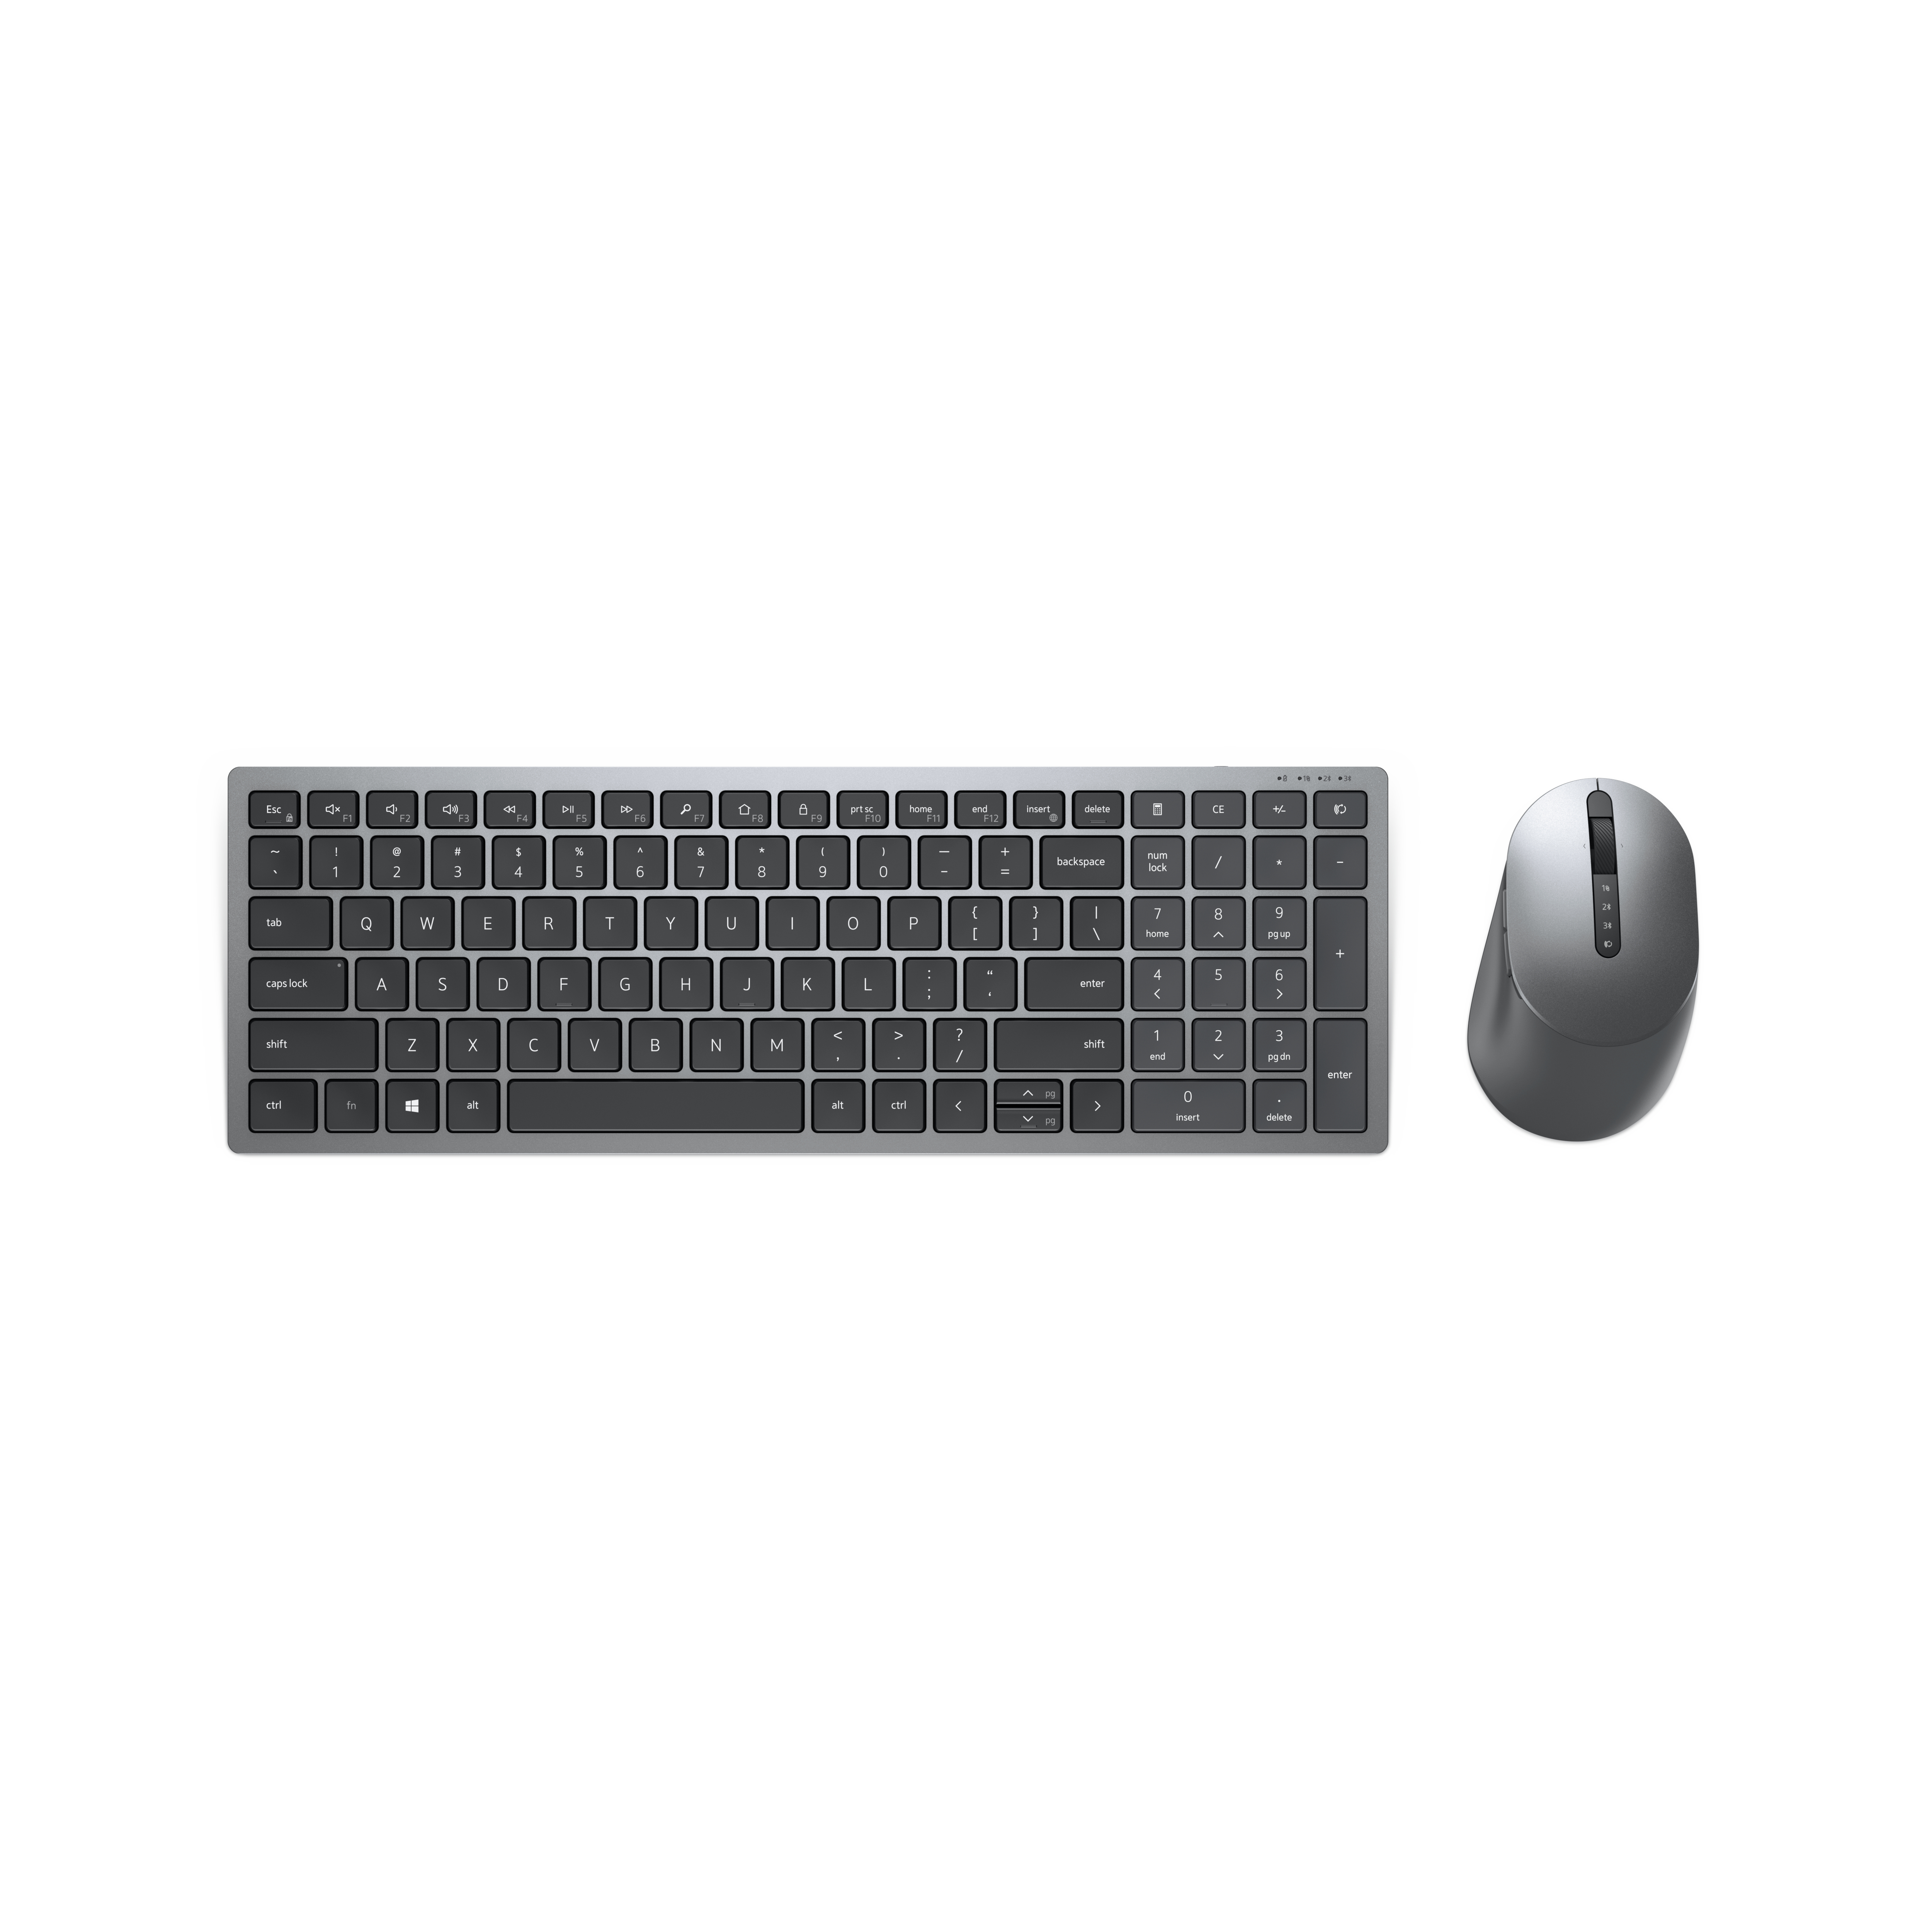 Draadloze toetsenbord en meerdere apparaten - KM7120W - internationaal (QWERTY) (KM7120W-GY-INT) kopen » Centralpoint